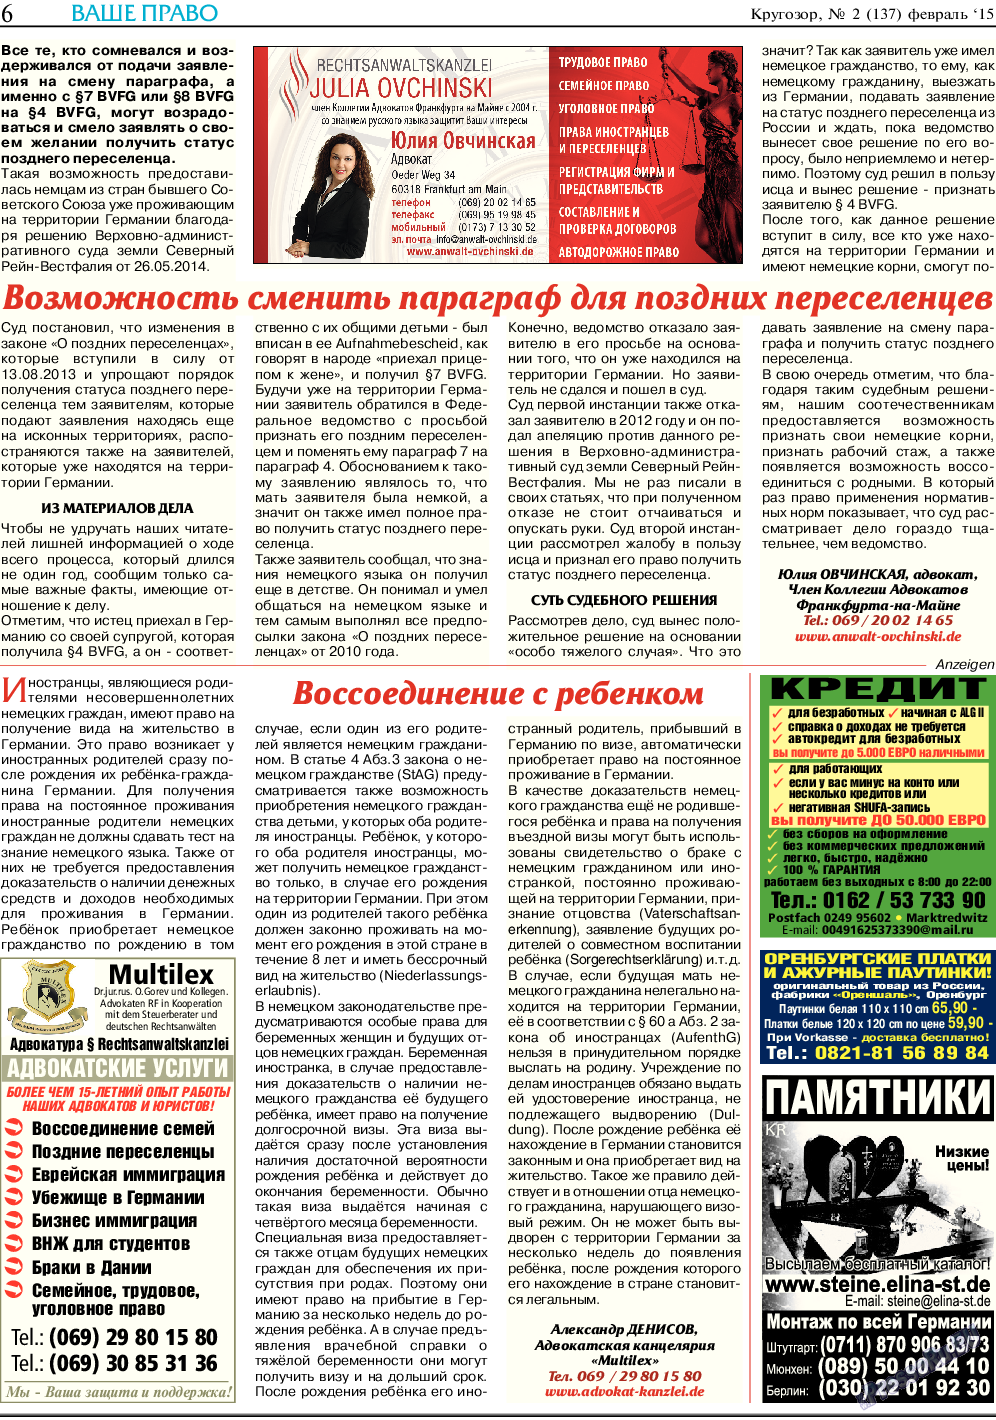 Кругозор (газета). 2015 год, номер 2, стр. 6